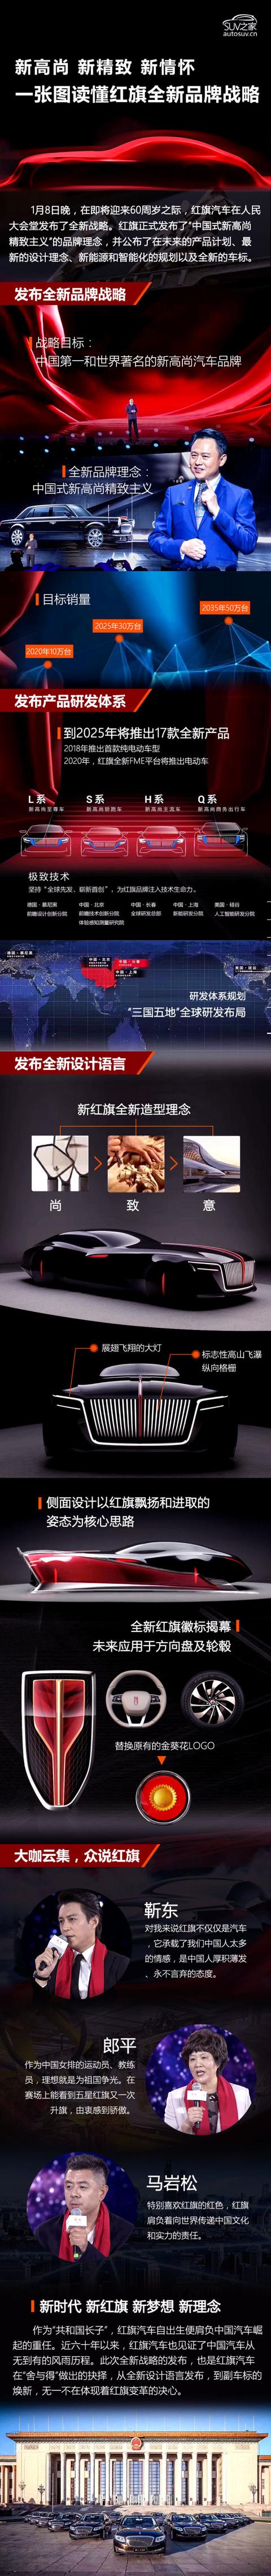 中国汽车长子踏上梦想征程，图解红旗全新品牌战略